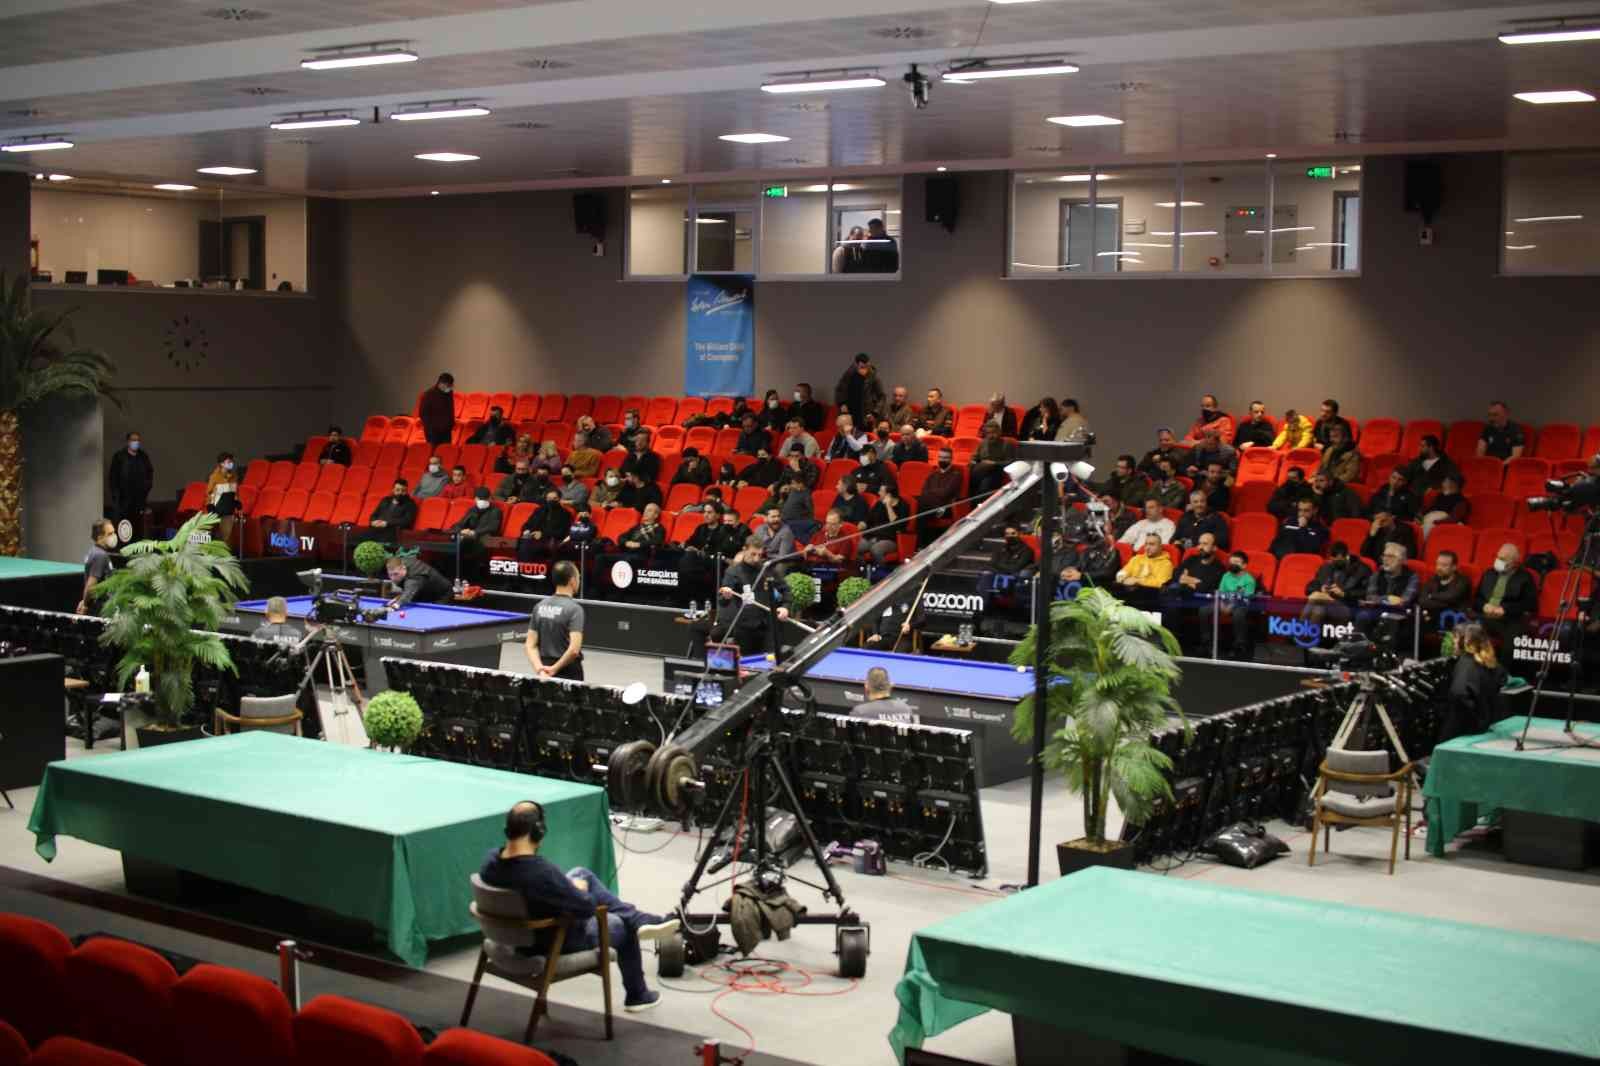 Dünya Bilardo Şampiyonası Gölbaşı’nda gerçekleştirildi #ankara